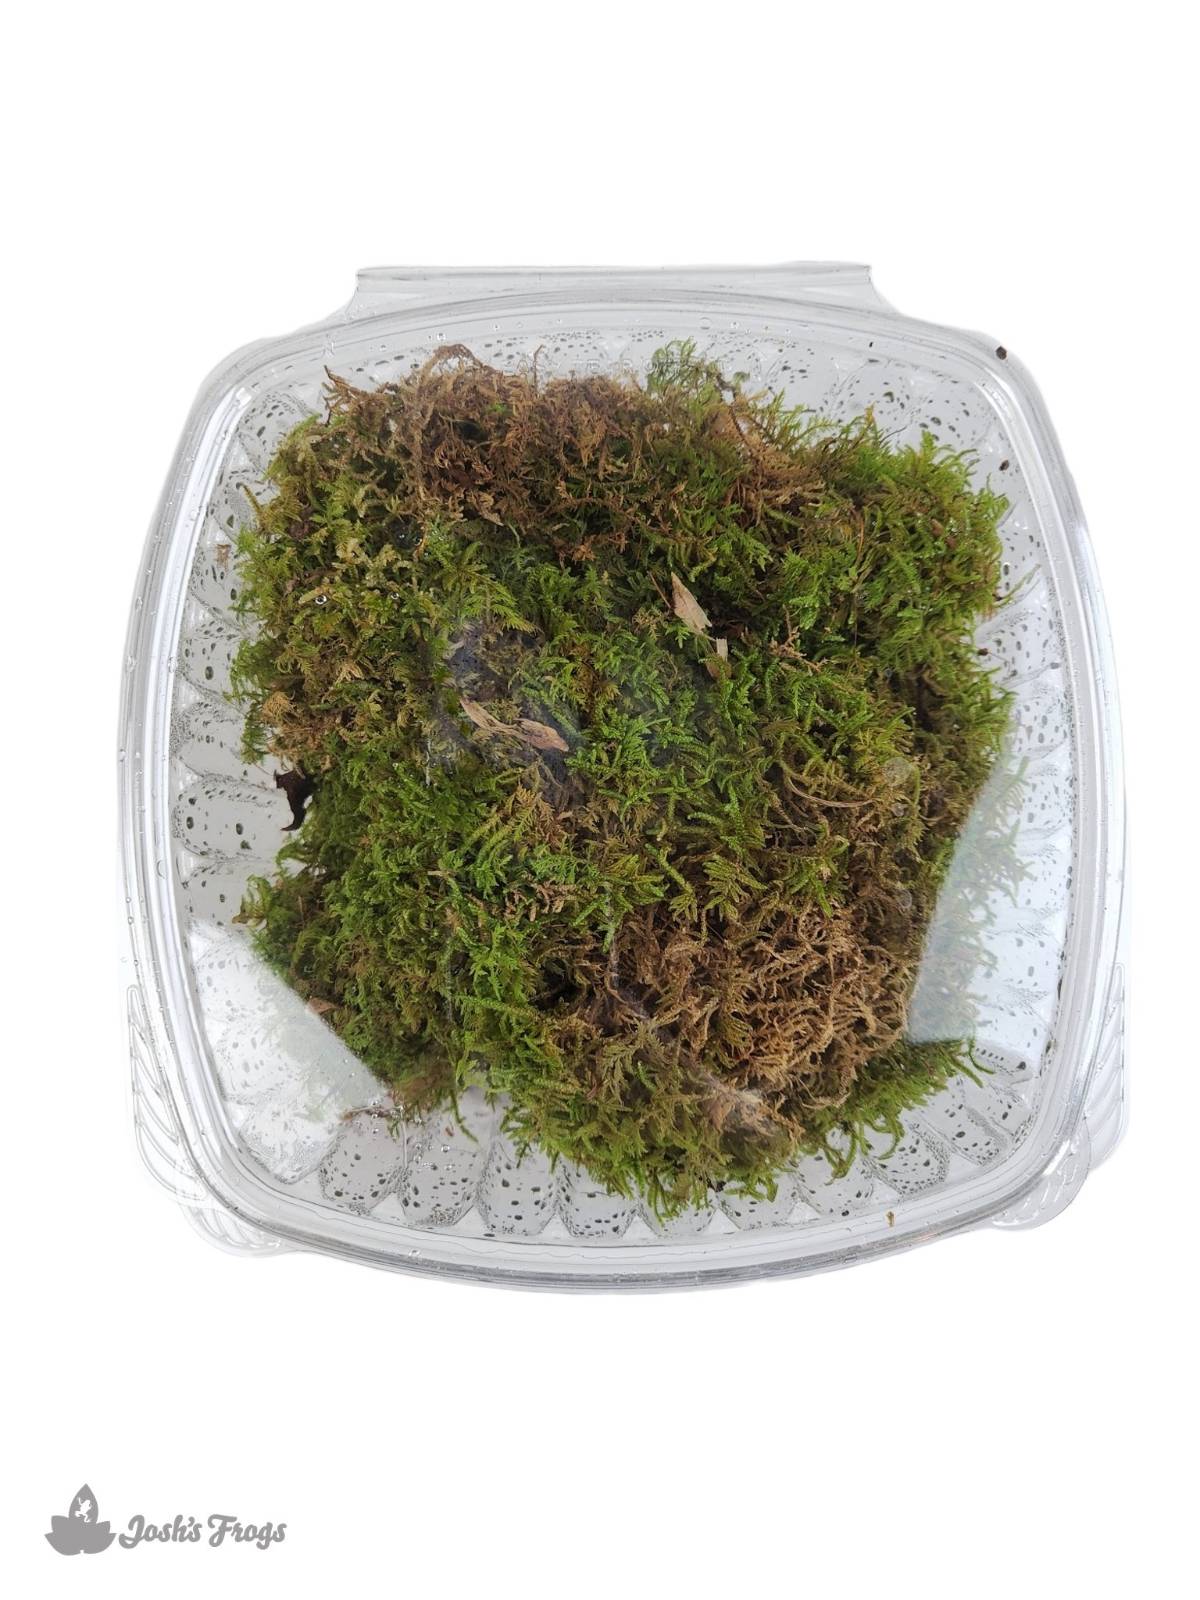 Josh's Frogs Terrarium Soil (1 Quart)